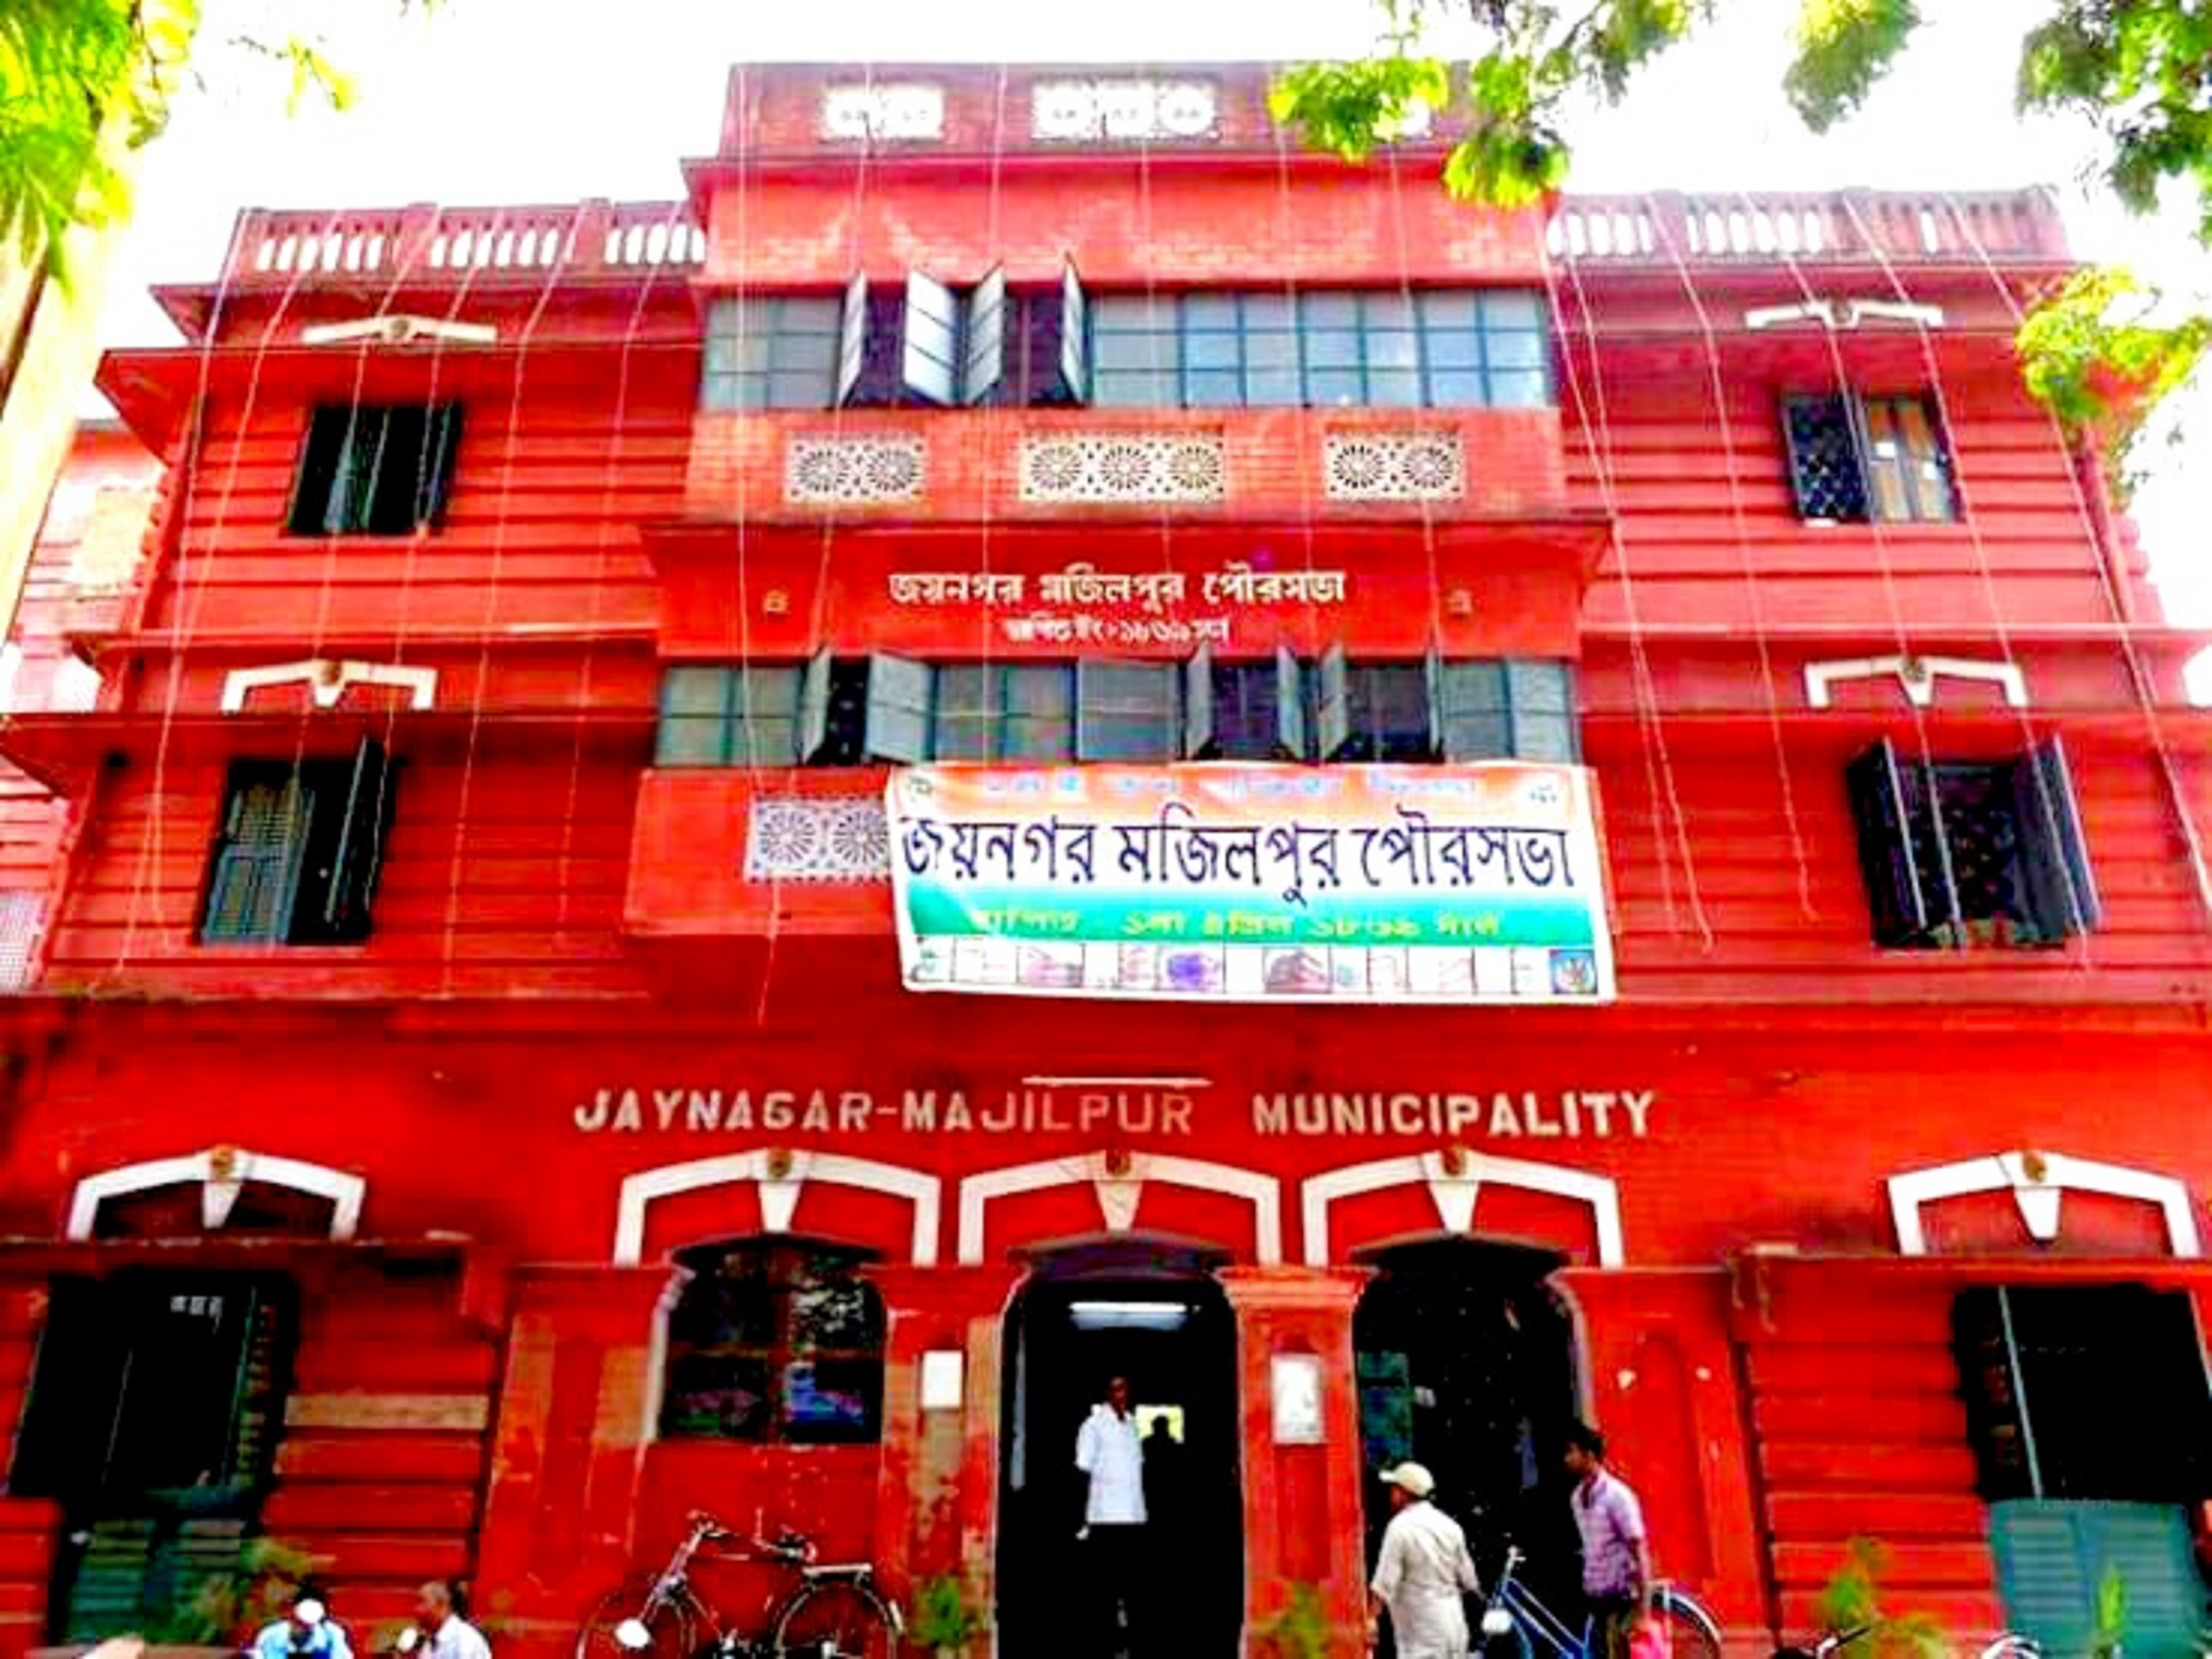 Jaynagar Majilpur Neighbourhood in Kolkata in Presidency, West Bengal, India